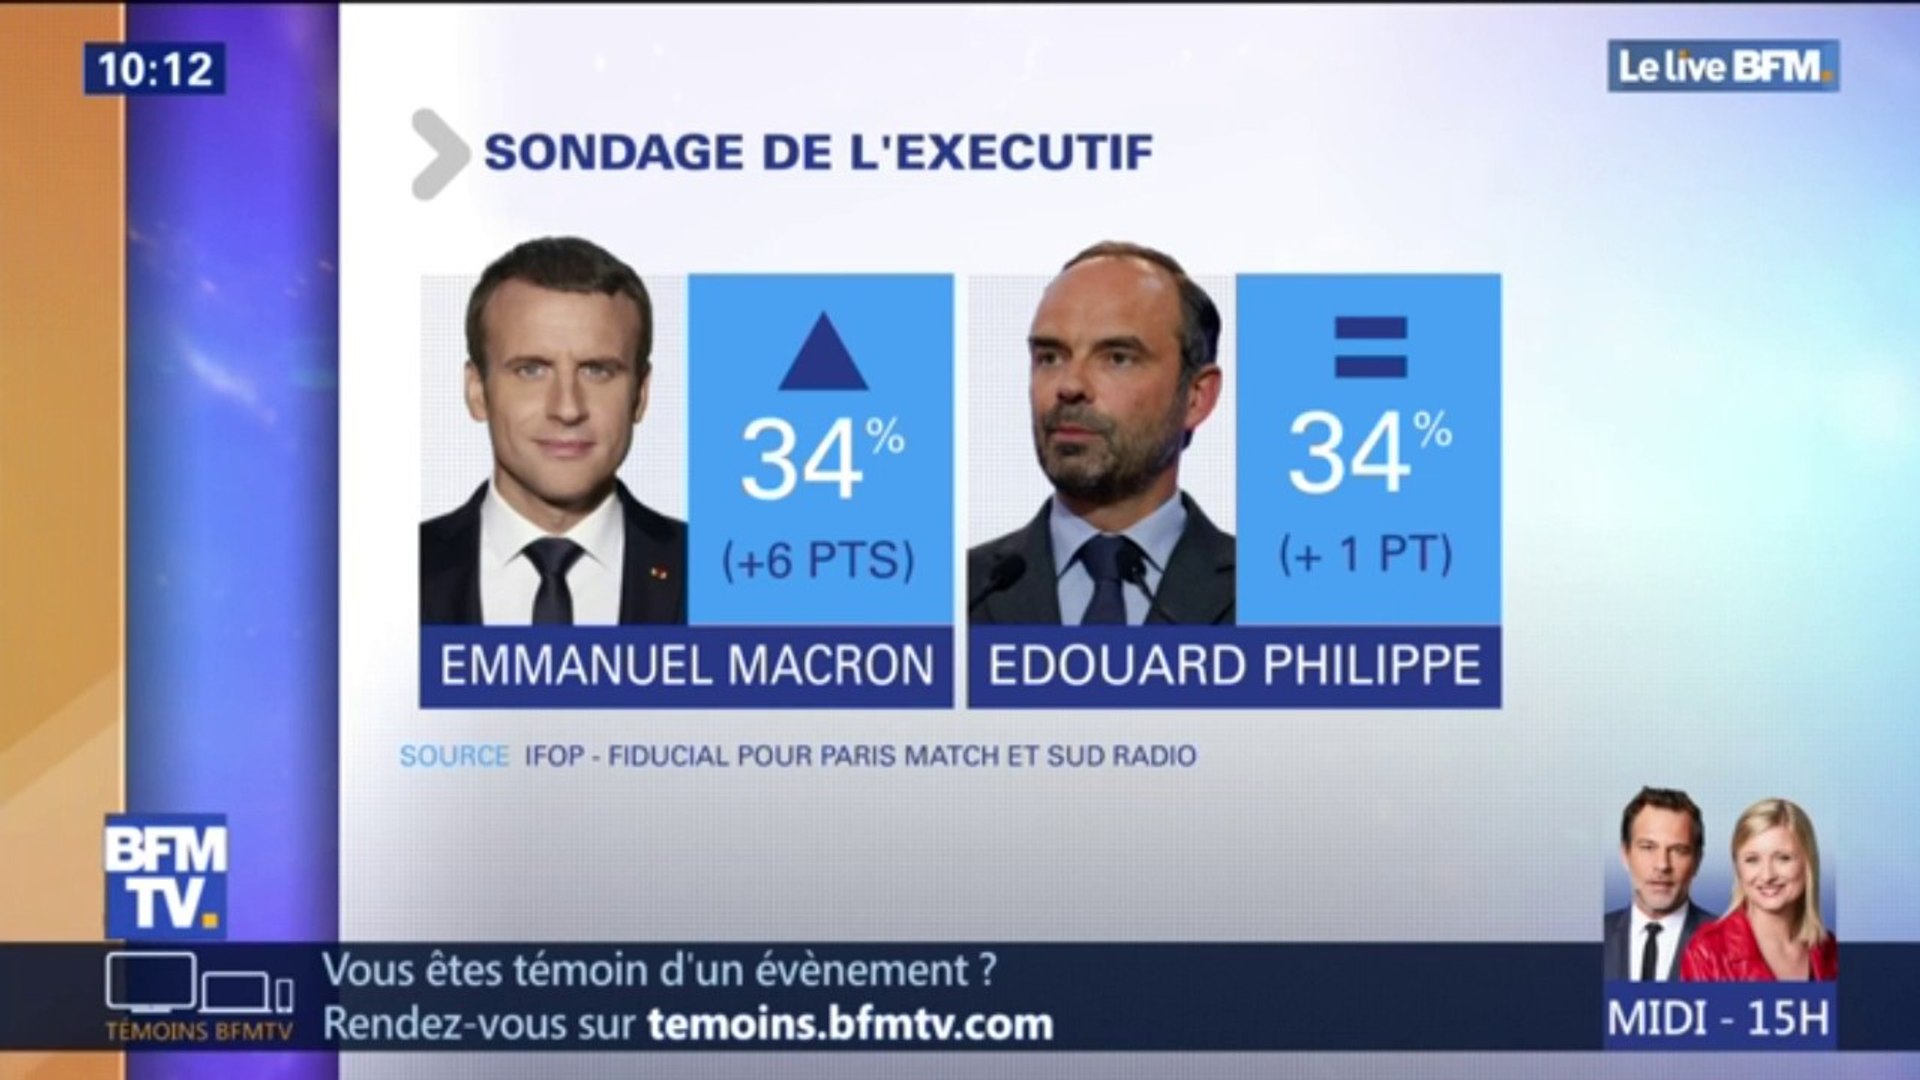 6 points : Emmanuel Macron retrouve la même popularité qu'avant la crise  des gilets jaunes selon un sondage - Vidéo Dailymotion